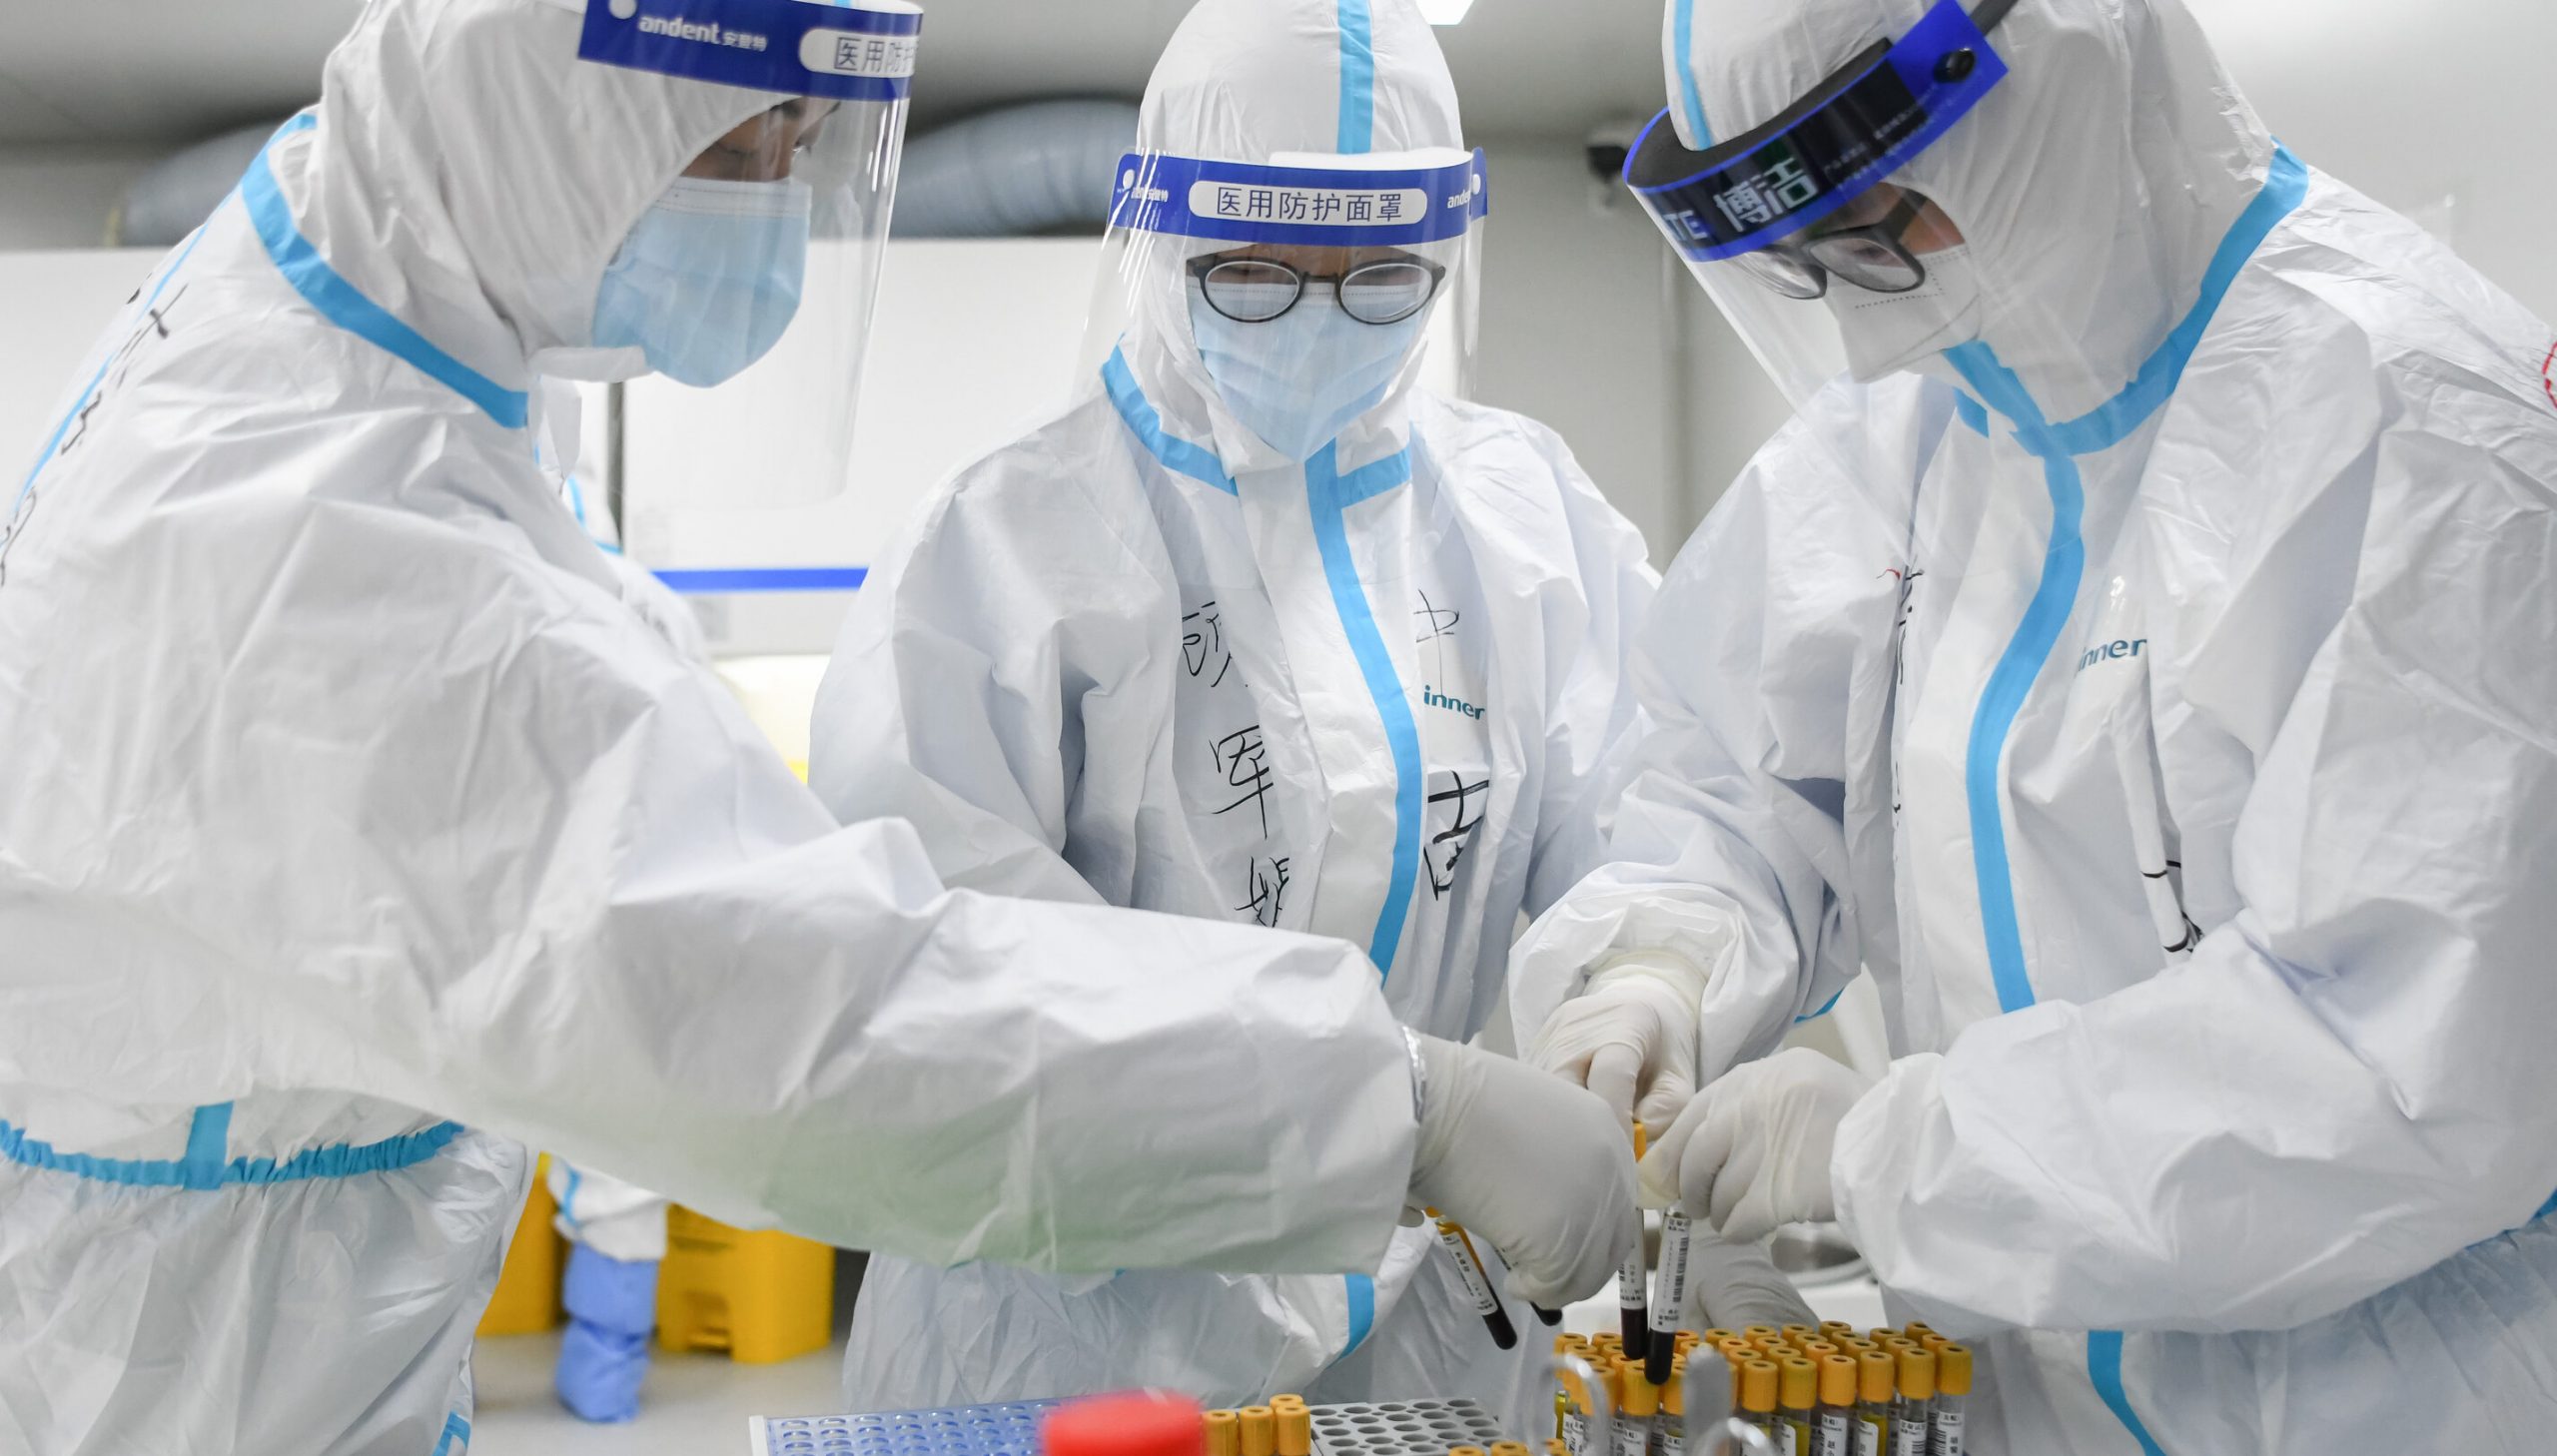 OMS își schimbă discursul: Primul pacient infectat cu Covid ar putea fi un angajat al laboratorului din Wuhan